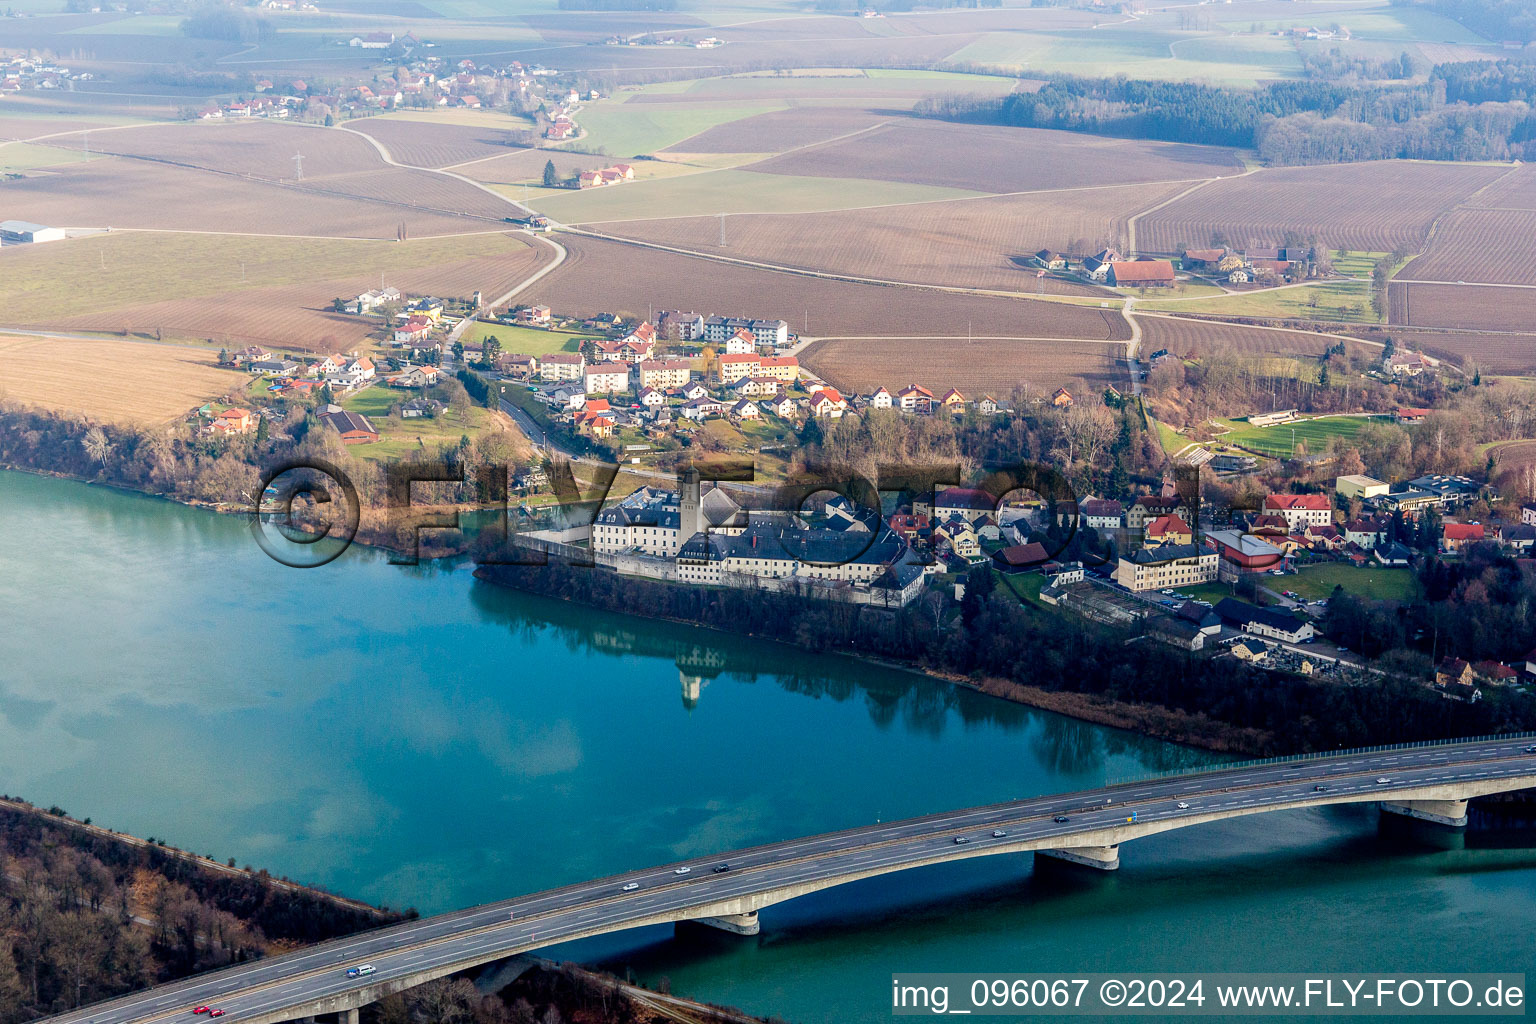 Luftbild von Gelände der Strafvollzugsanstalt Suben am Ufer des Inn in Suben in Oberösterreich, Österreich